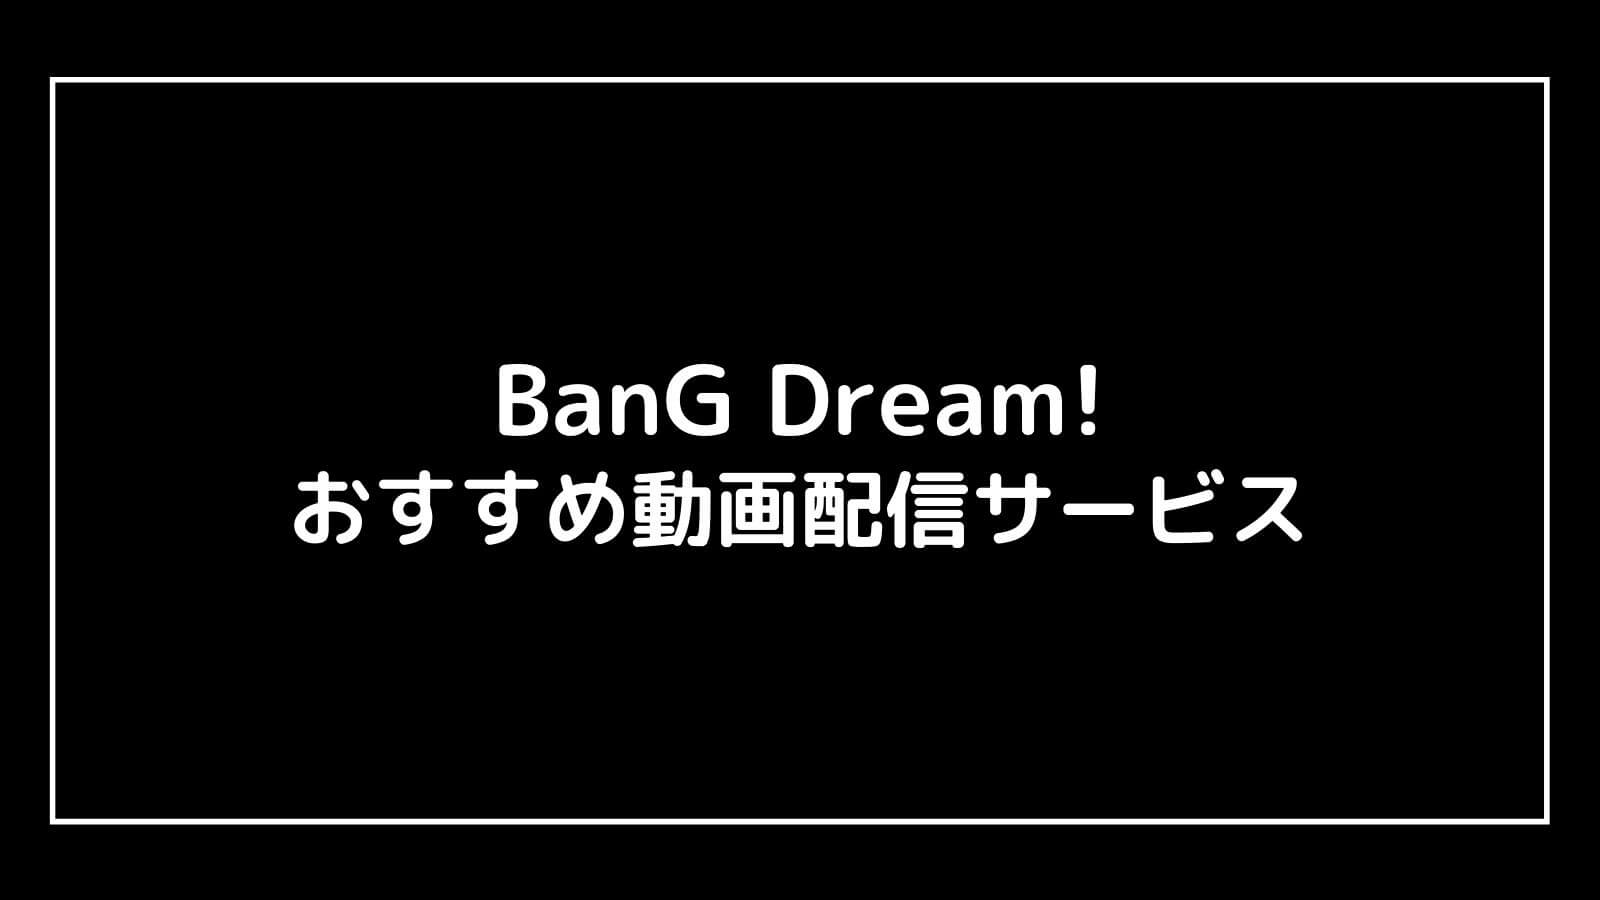 映画アニメ『BanG Dream!』シリーズを全作品無料で視聴できる動画配信サービス